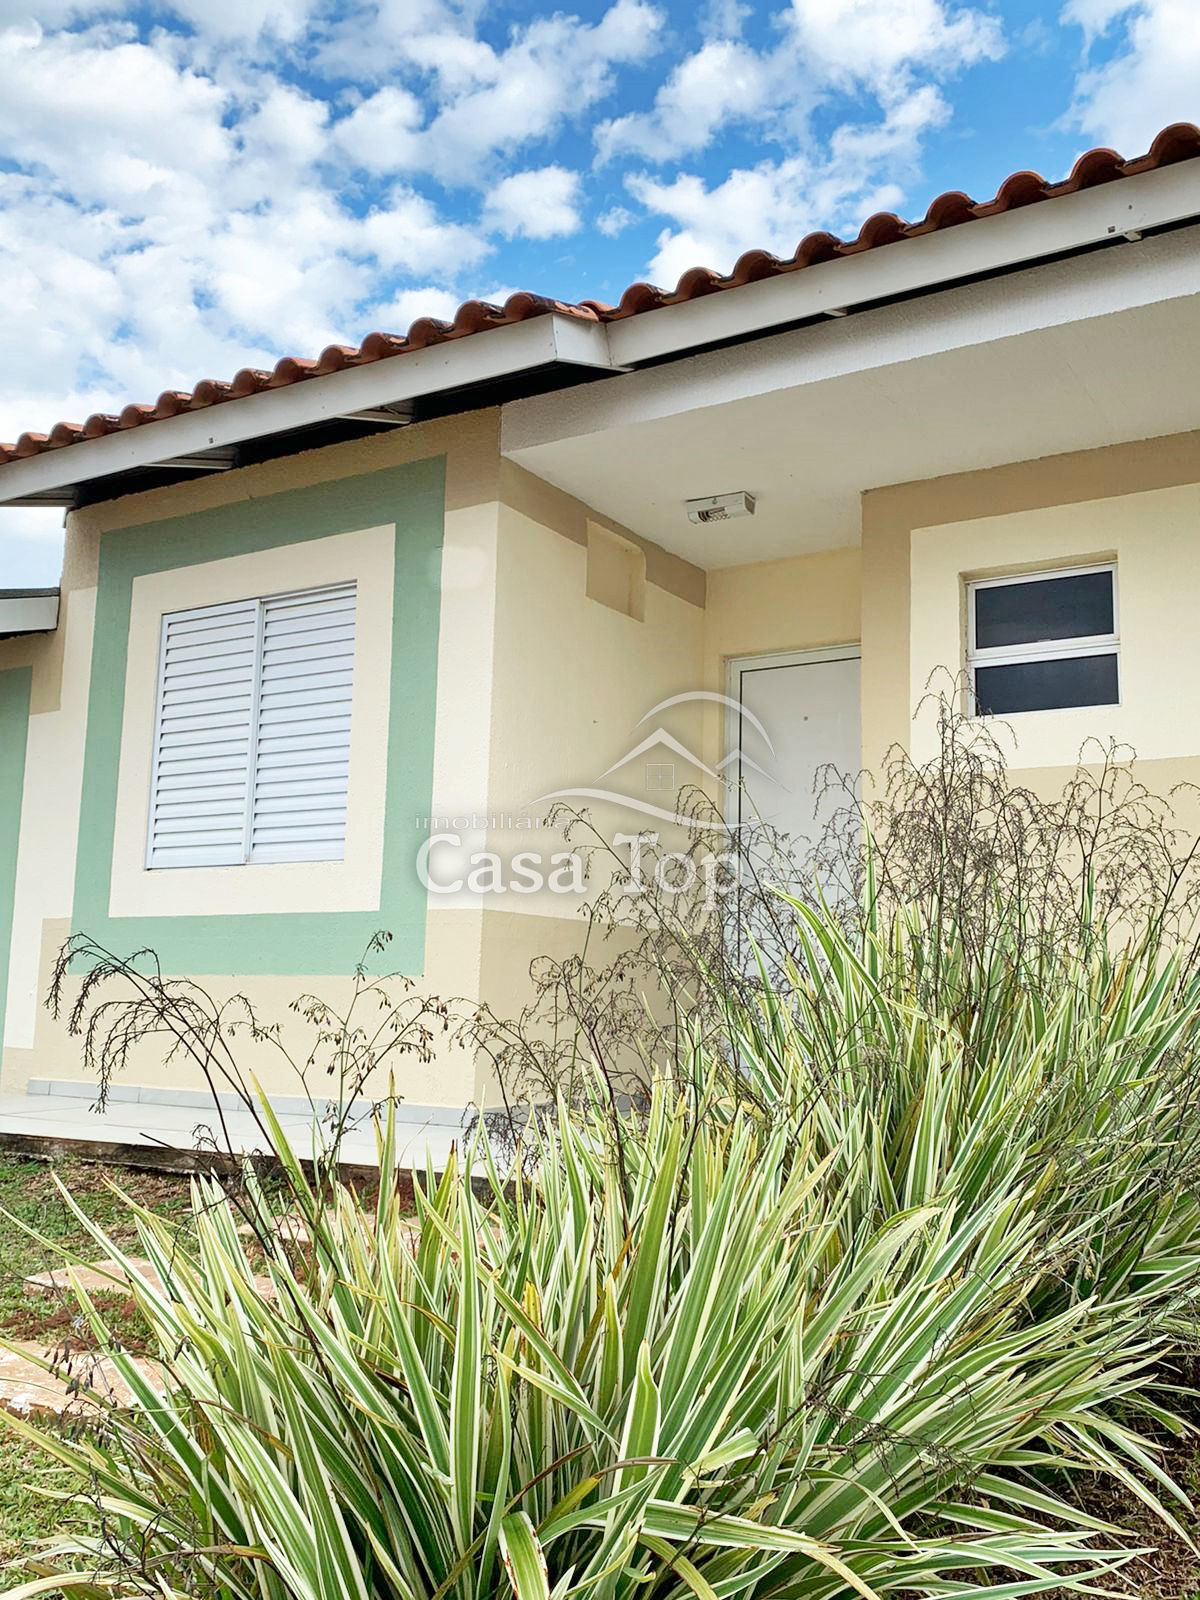 Casa semimobiliada para alugar Condomínio Residencial Moradas - Boa Vista